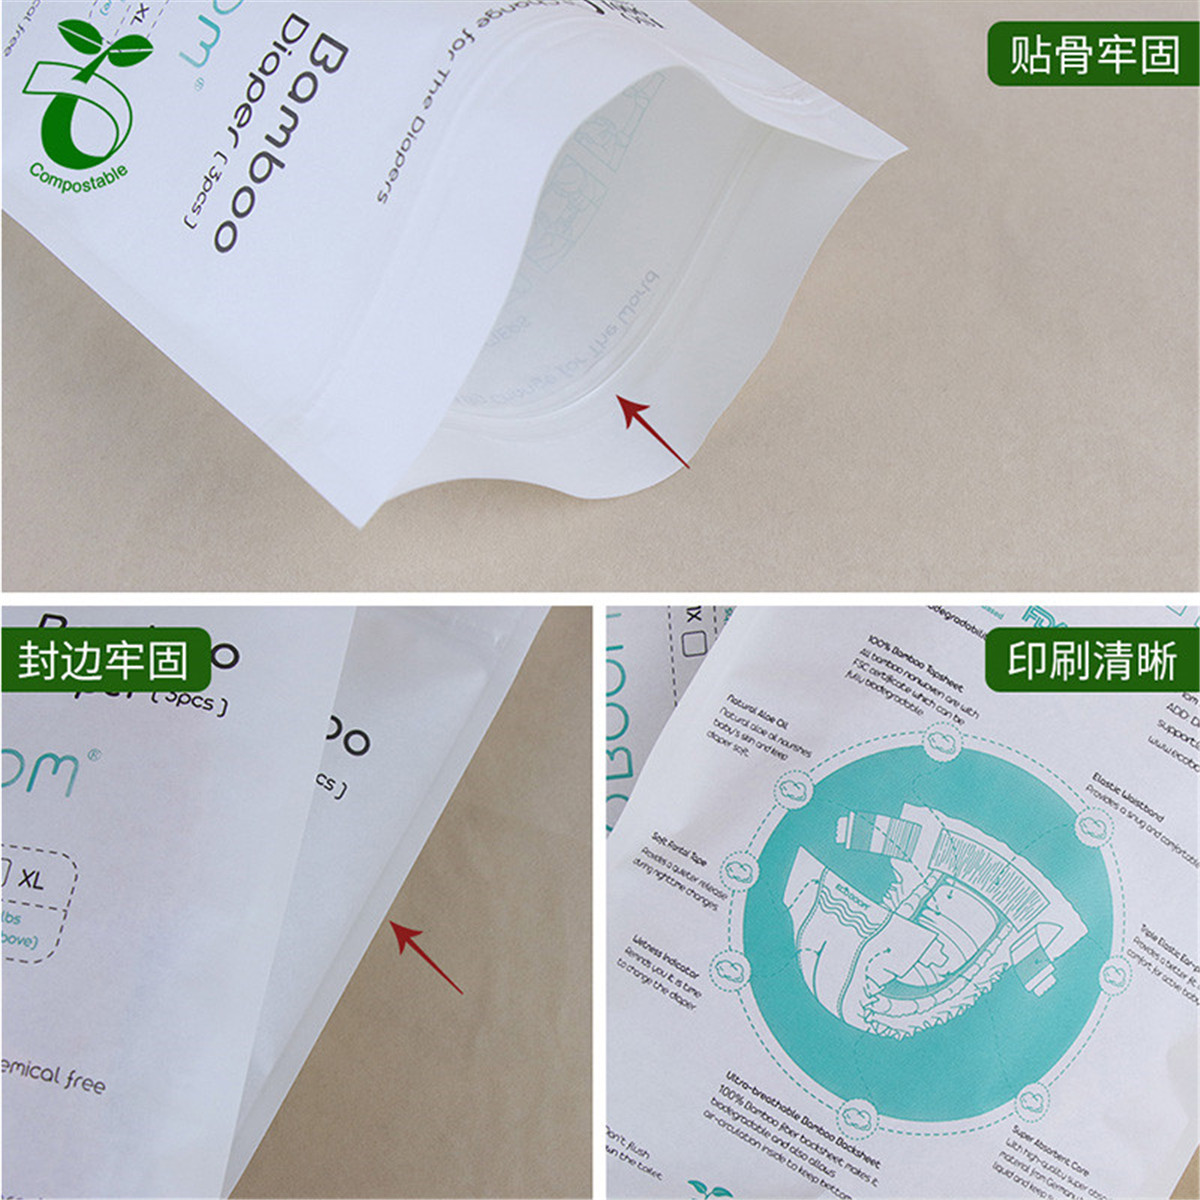 စိတ်ကြိုက်ပုံနှိပ်လိုဂို eco friendly kraft paper တံဆိပ်ခတ်နိုင်သော ဇစ်သော့အိတ် (၆)